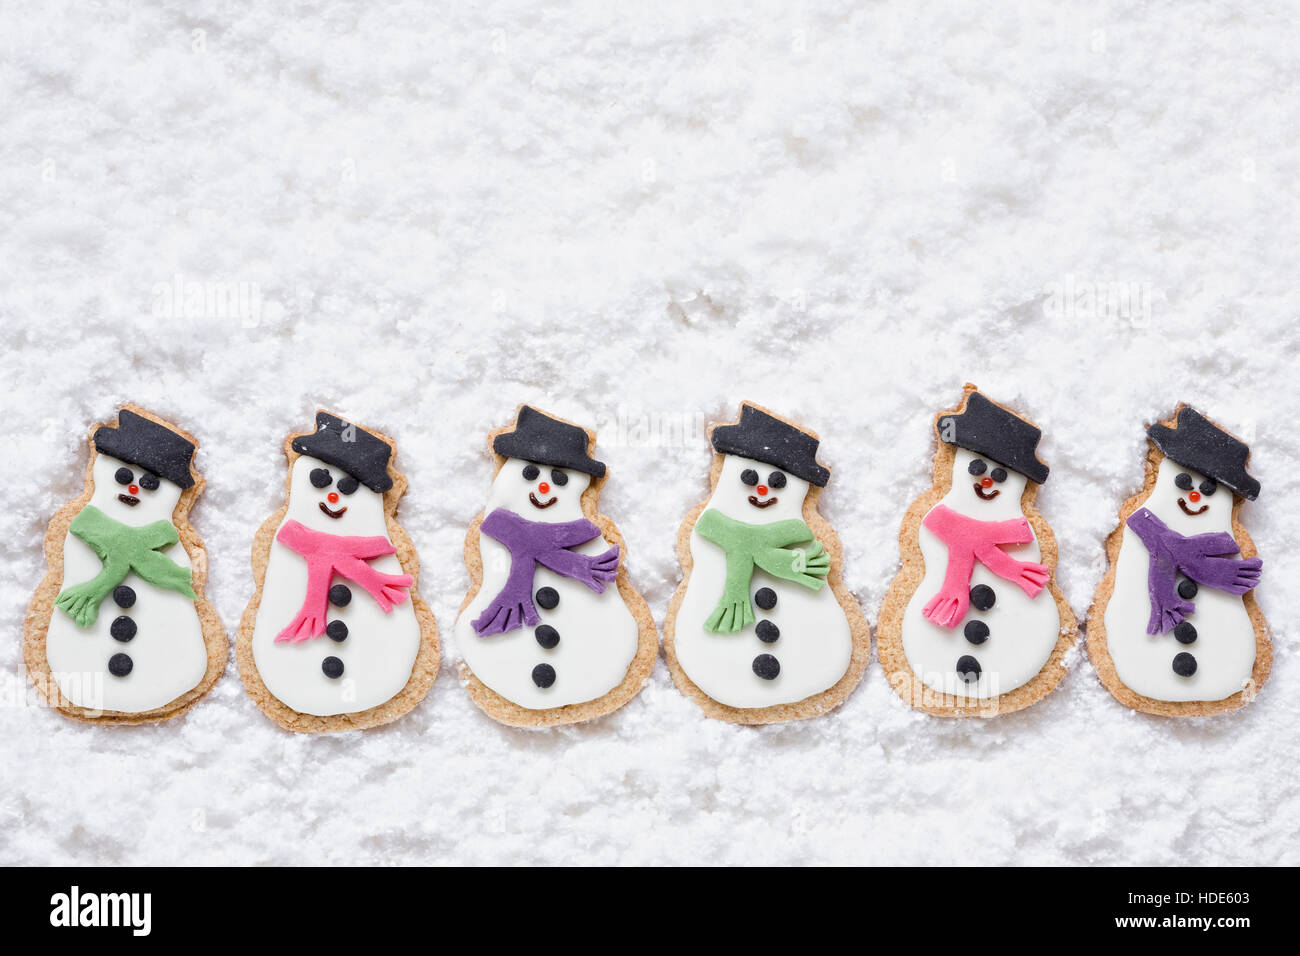 Sei in casa biscotti pupazzi di neve su un sfondo innevato. Foto Stock